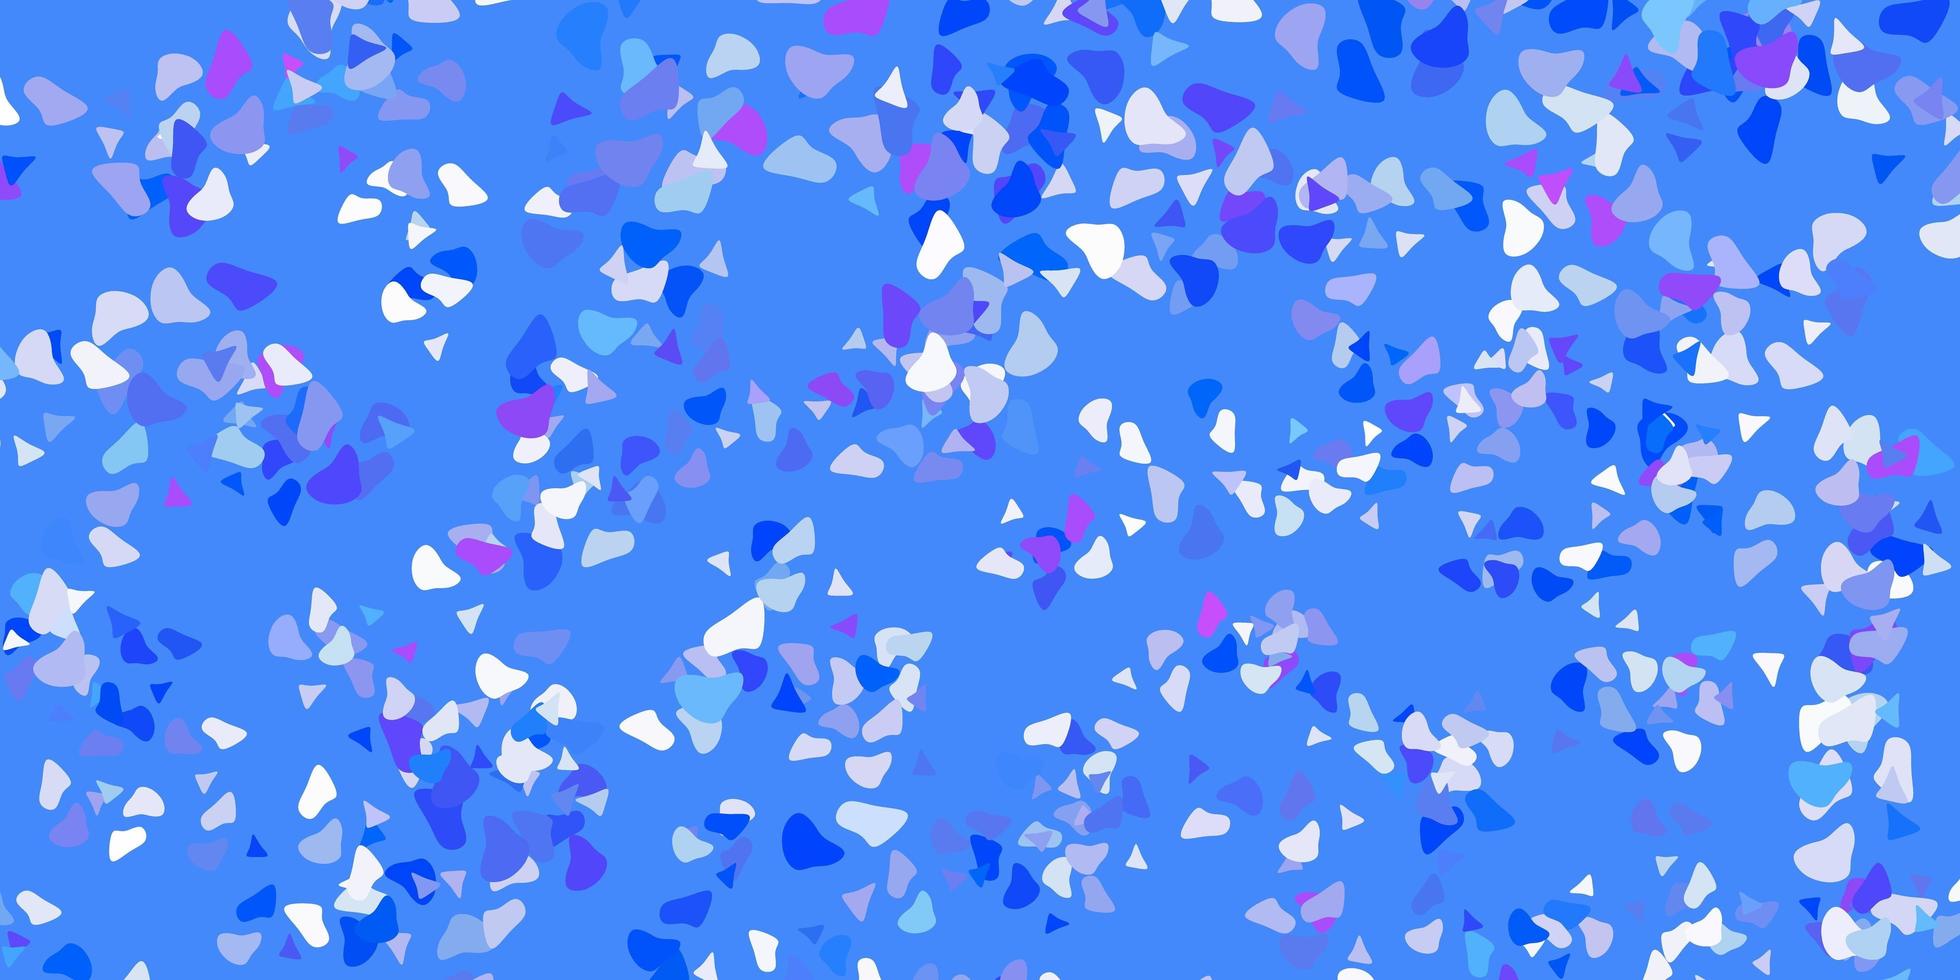 ljusrosa, blå vektorstruktur med memphis-former. vektor